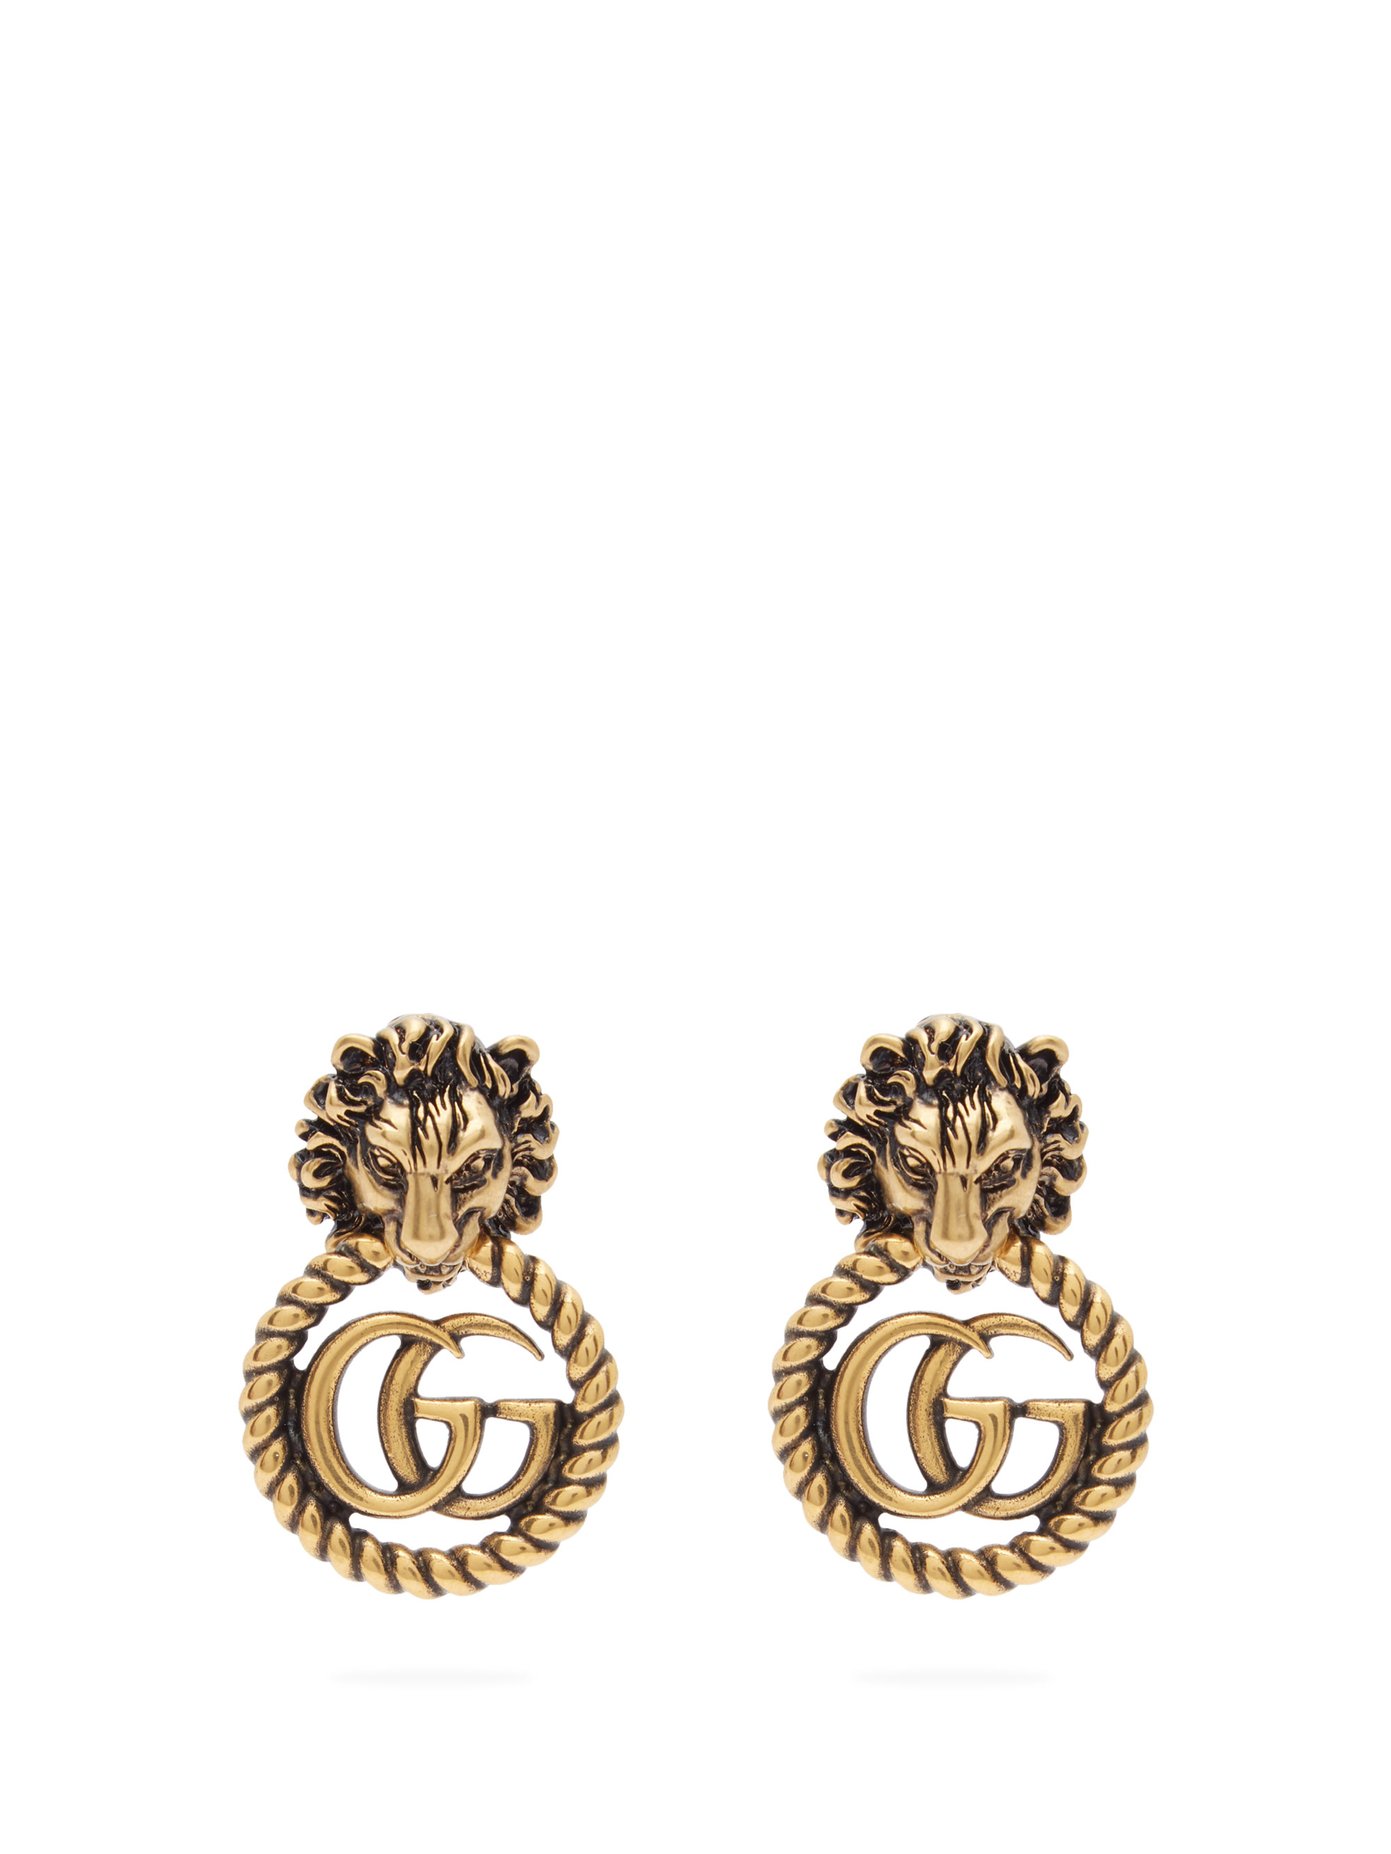 GG lion door-knocker earrings | Gucci 